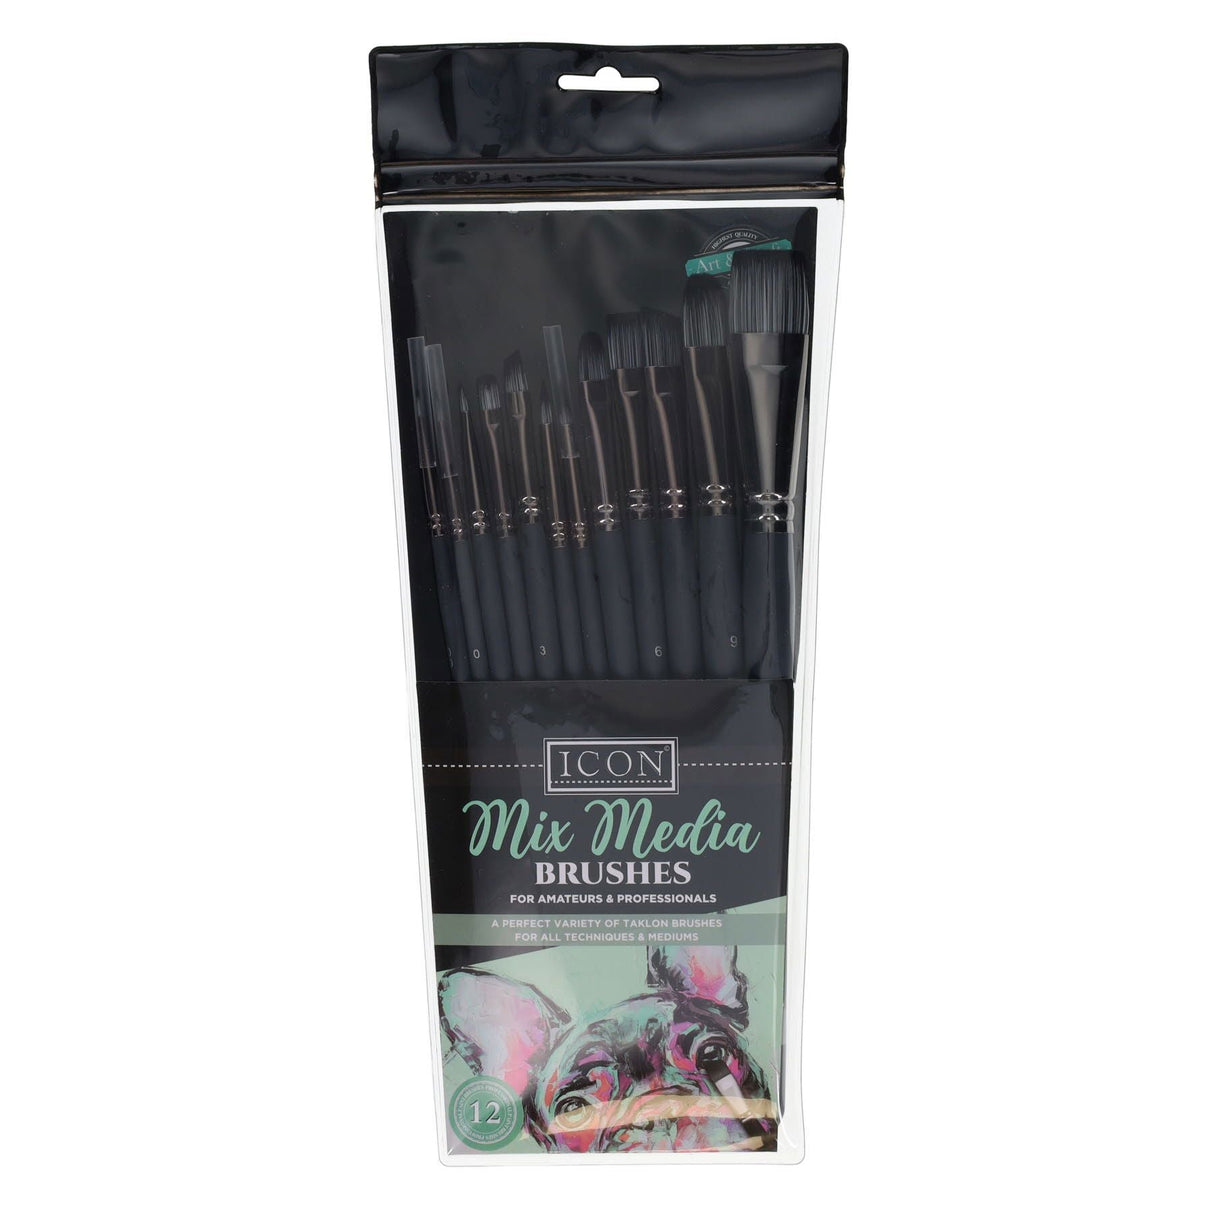 Icon Taklon Paint Brush Set - Mix Media - Pack of 12 | Stationery Shop UK